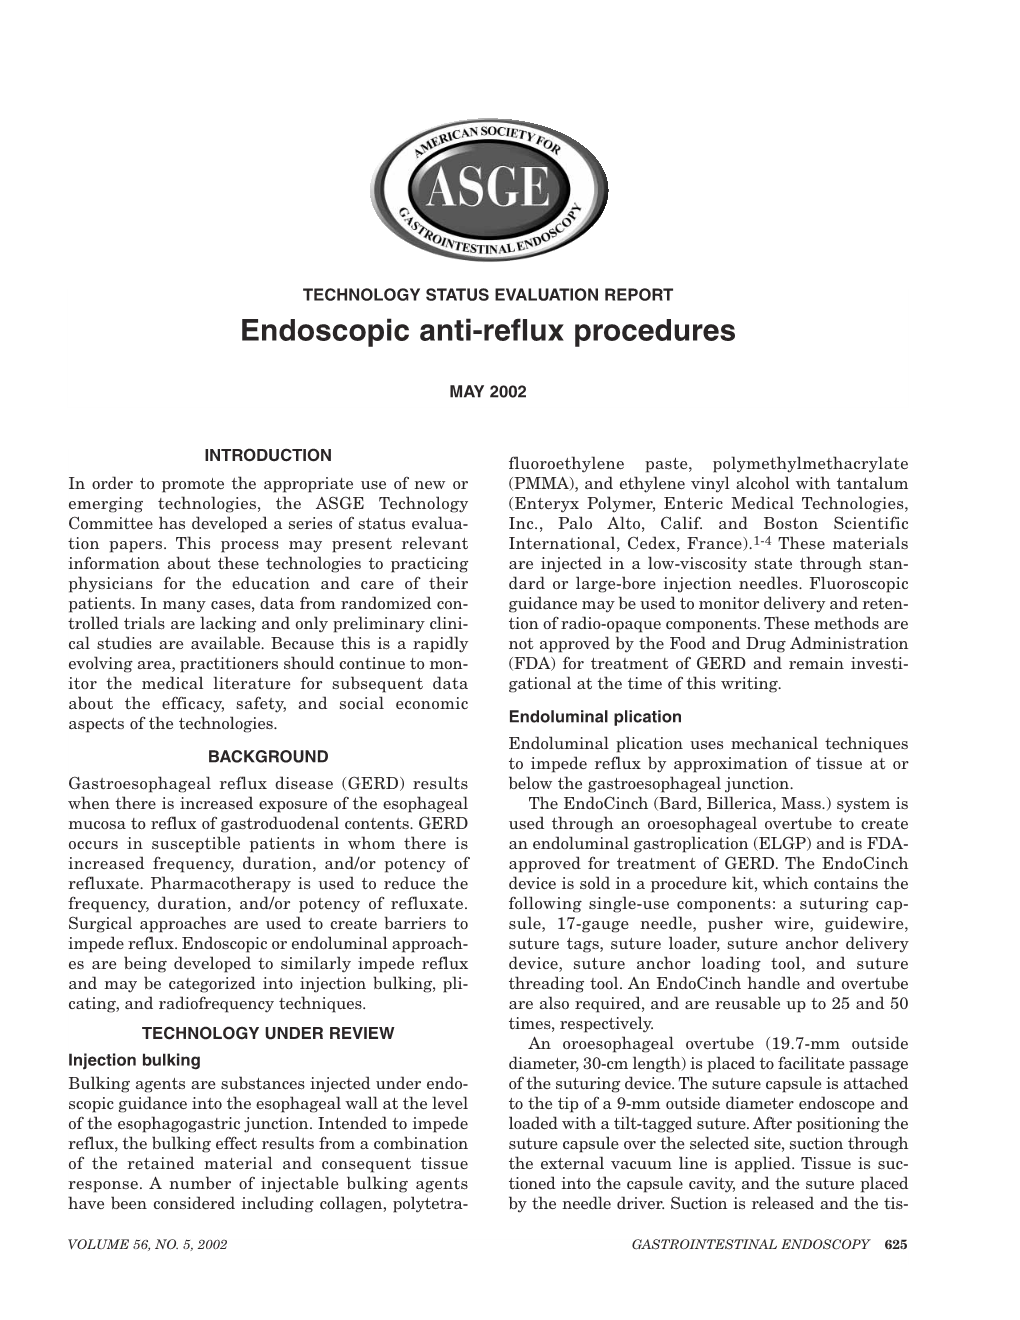 Endoscopic Anti-Reflux Procedures